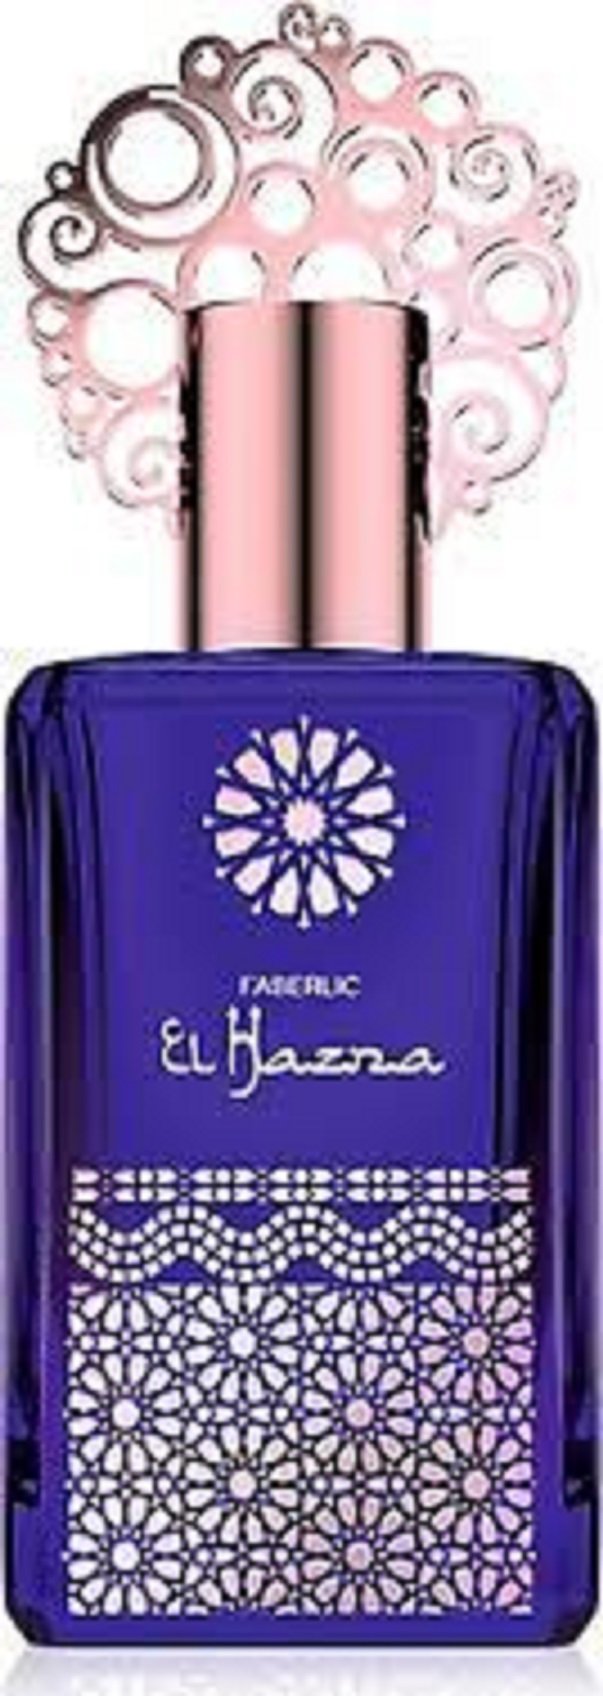 Faberlic El Hazna EDP Oryantal Kadın Parfüm 50 ml